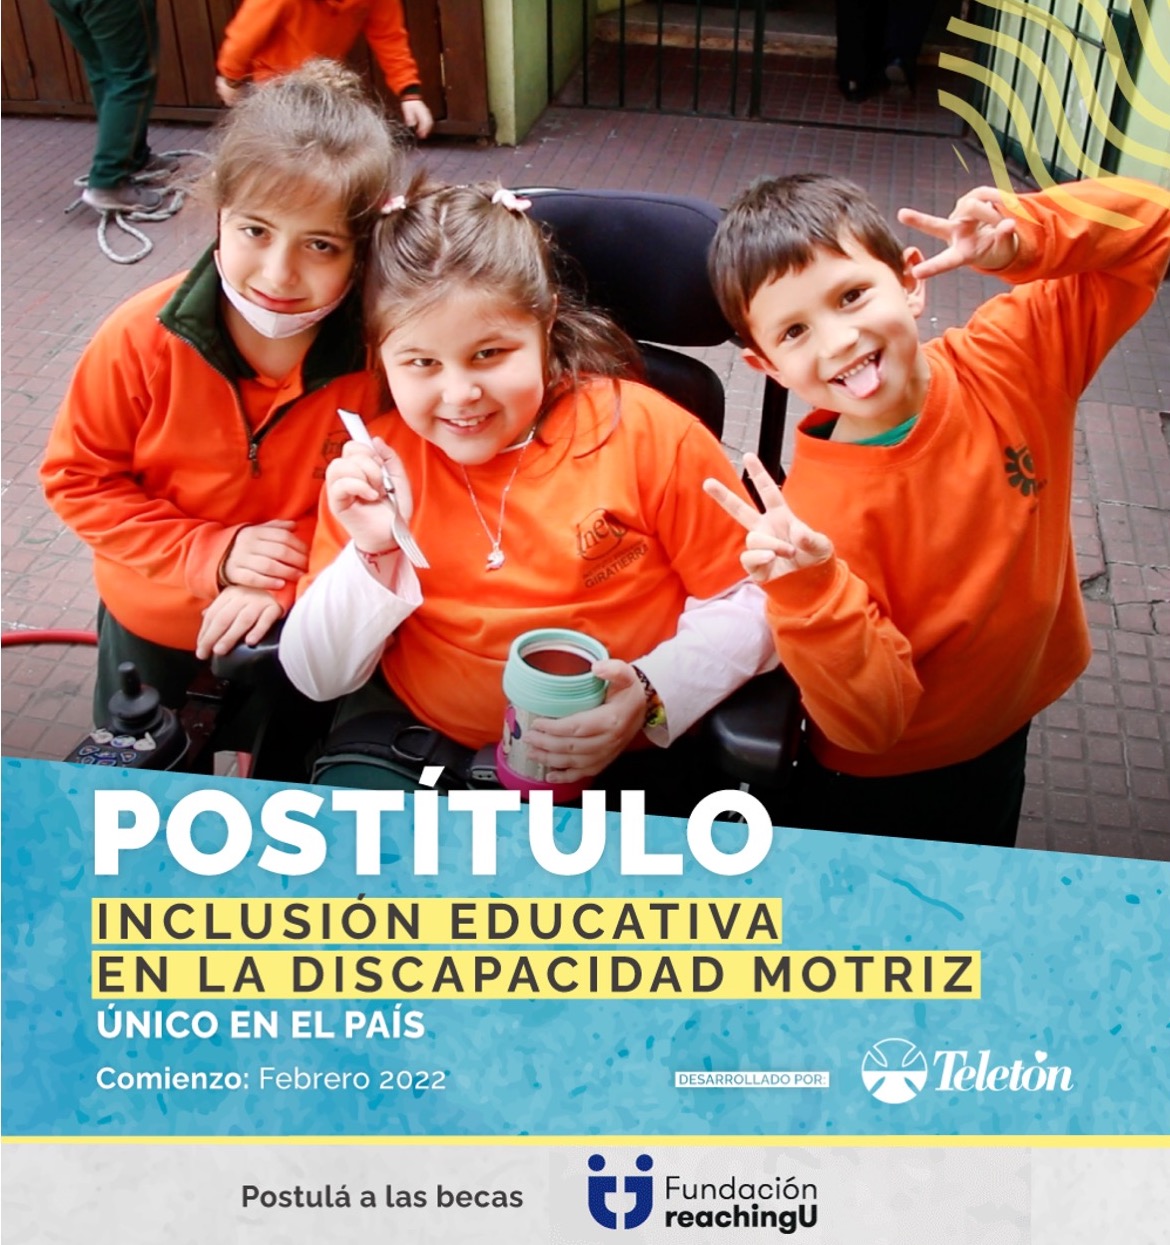 Becas totales para el postítulo «Inclusión educativa en la discapacidad motriz» de Teletón